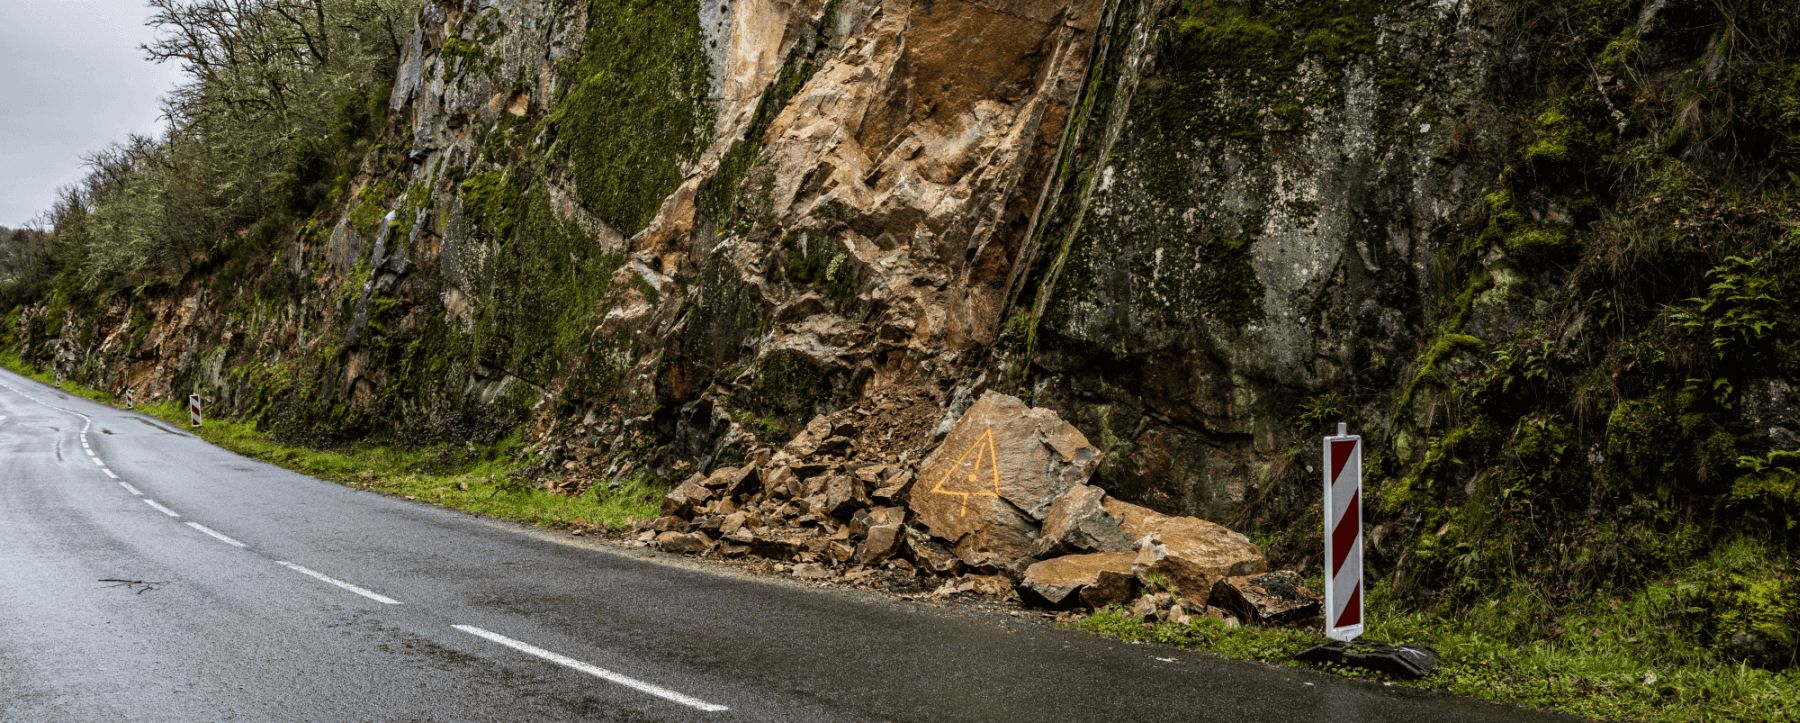 Steinschlag im alpinen Gelände ein hohes Risiko - KFV - Kuratorium